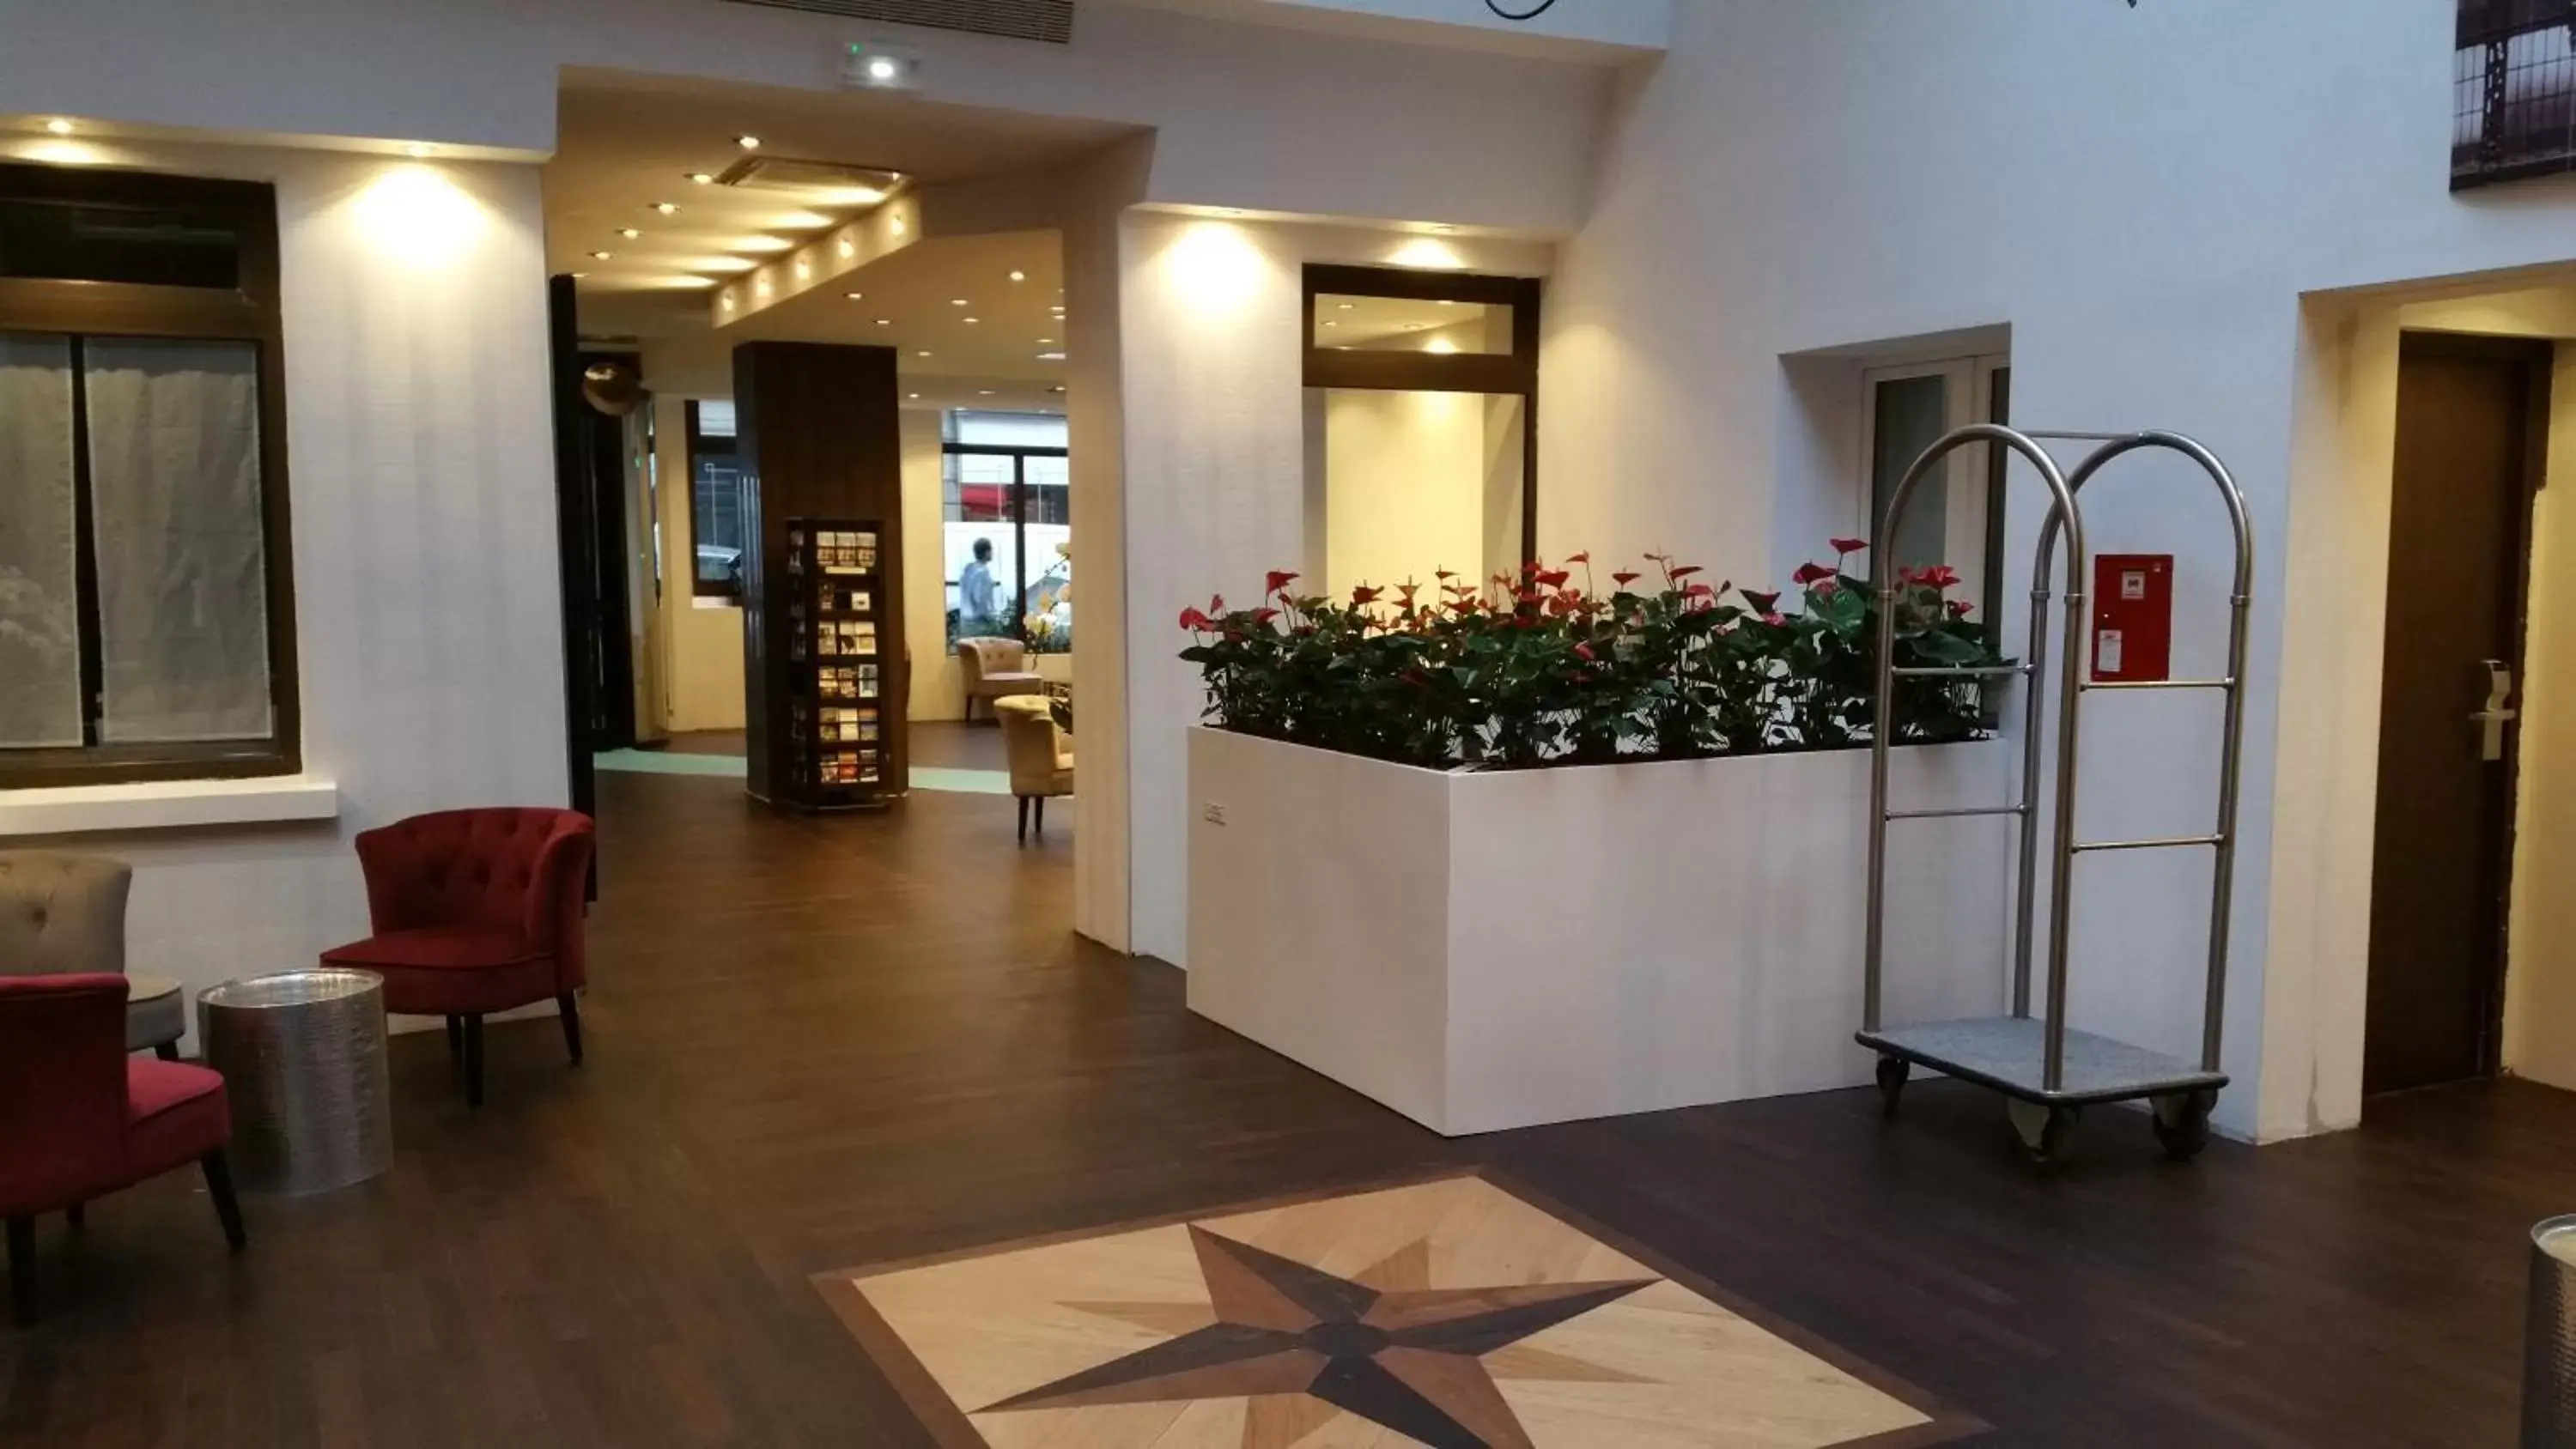 Lobby or reception, Lobby/Reception in Hotel Aida Marais